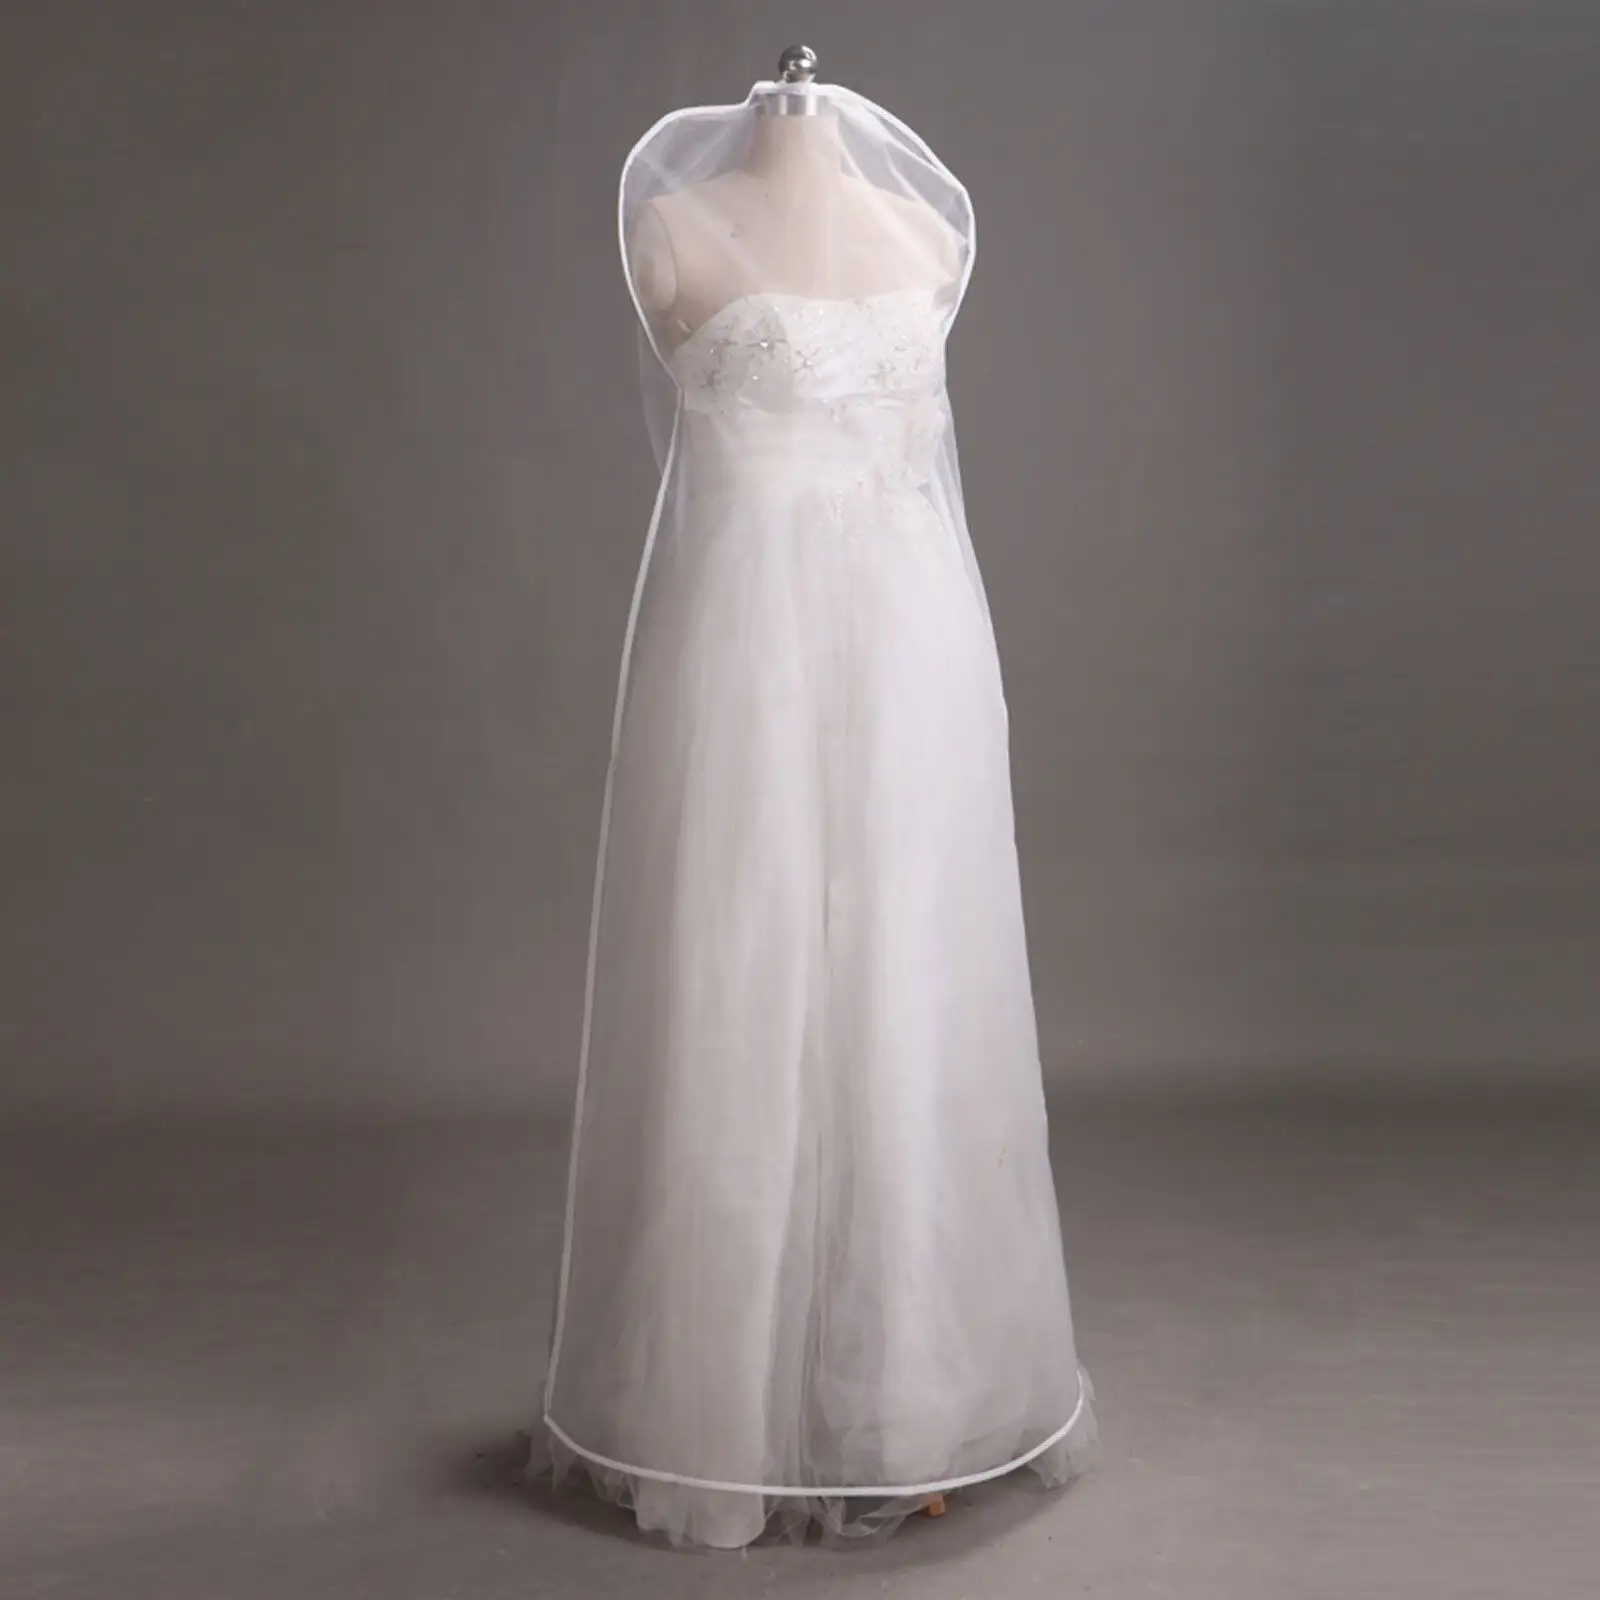 Personalizado Dobrável Saco de Roupa Vestido de Casamento à prova de água